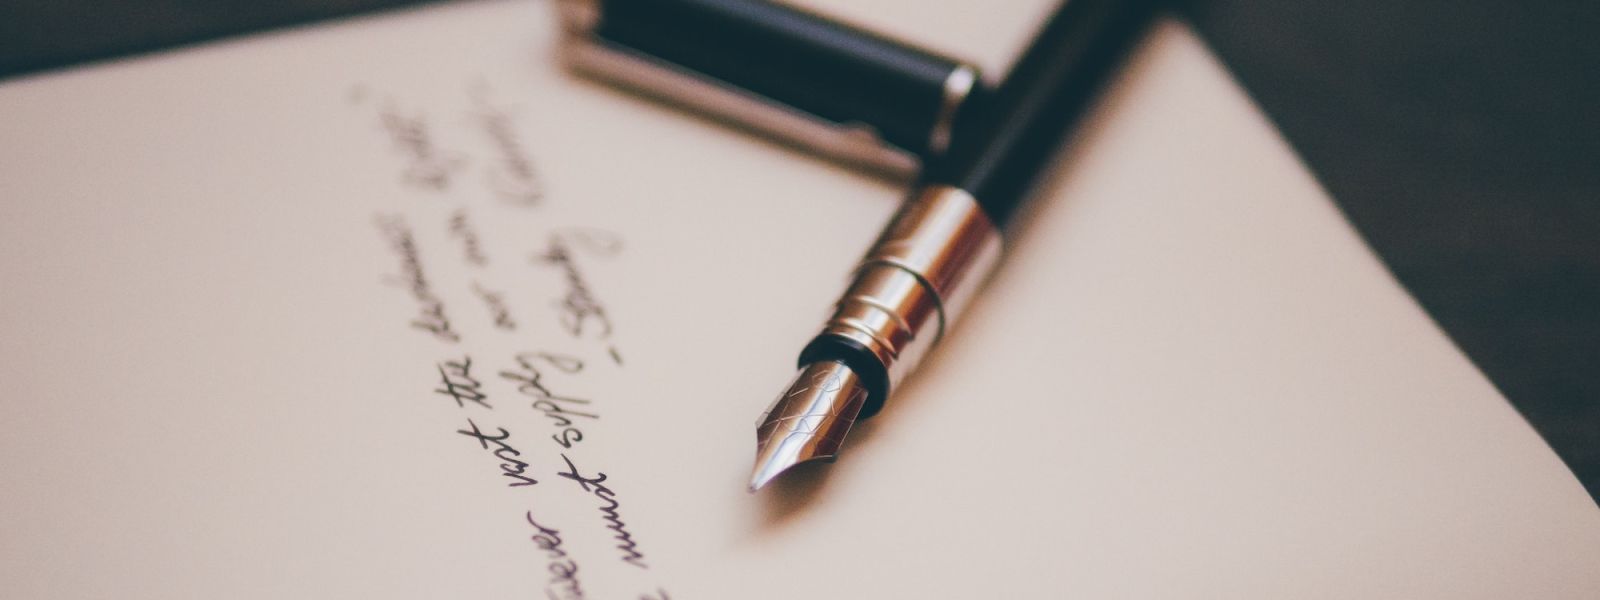 A fountain pen lying on a handwritten letter.